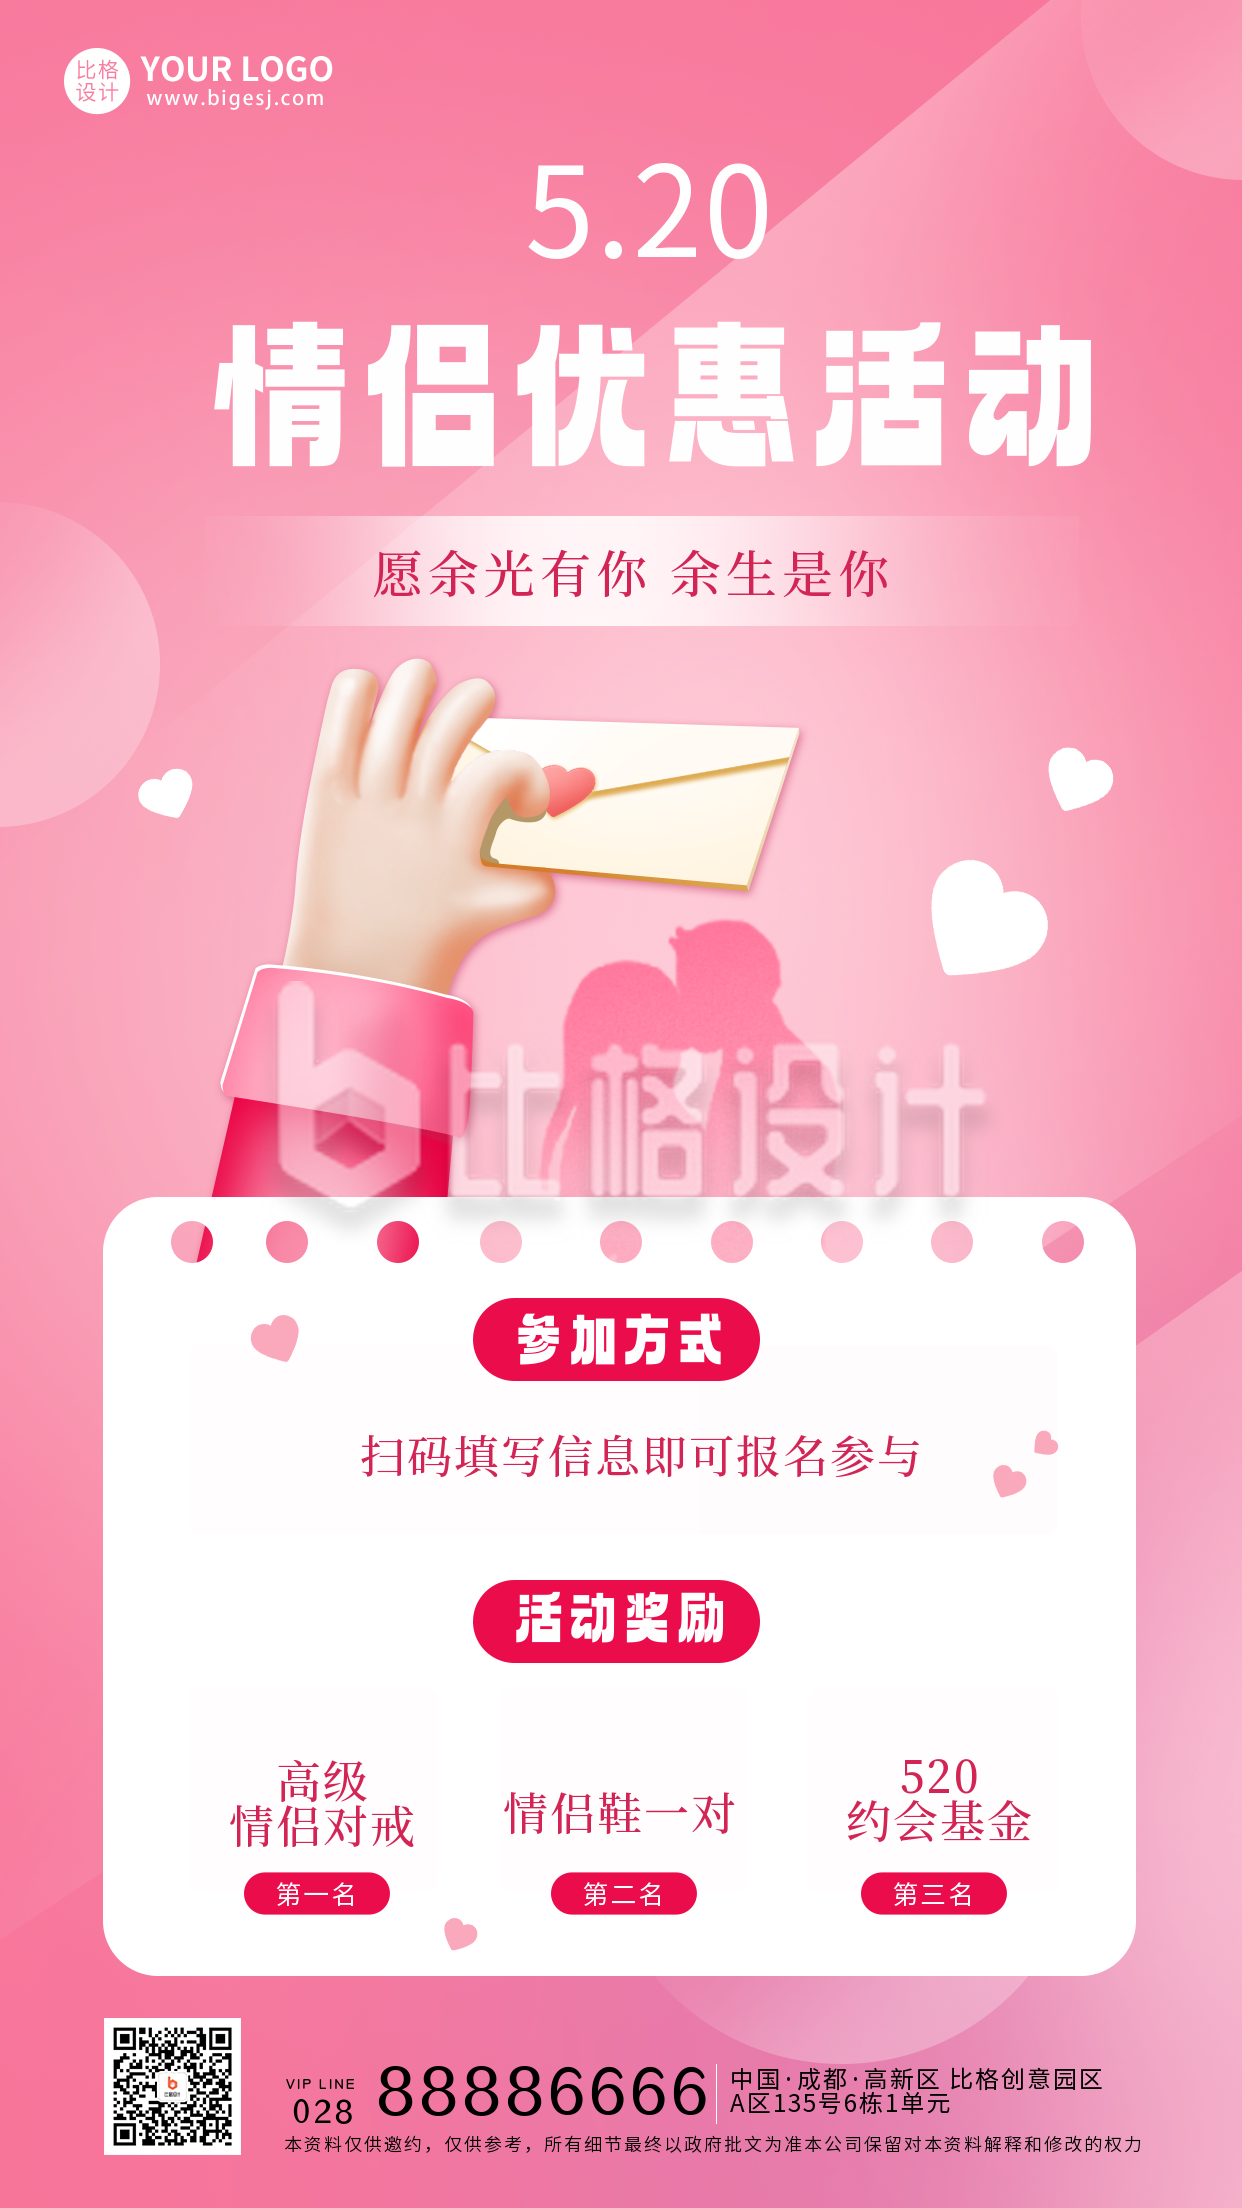 粉色手绘风520情人节宣传手机海报